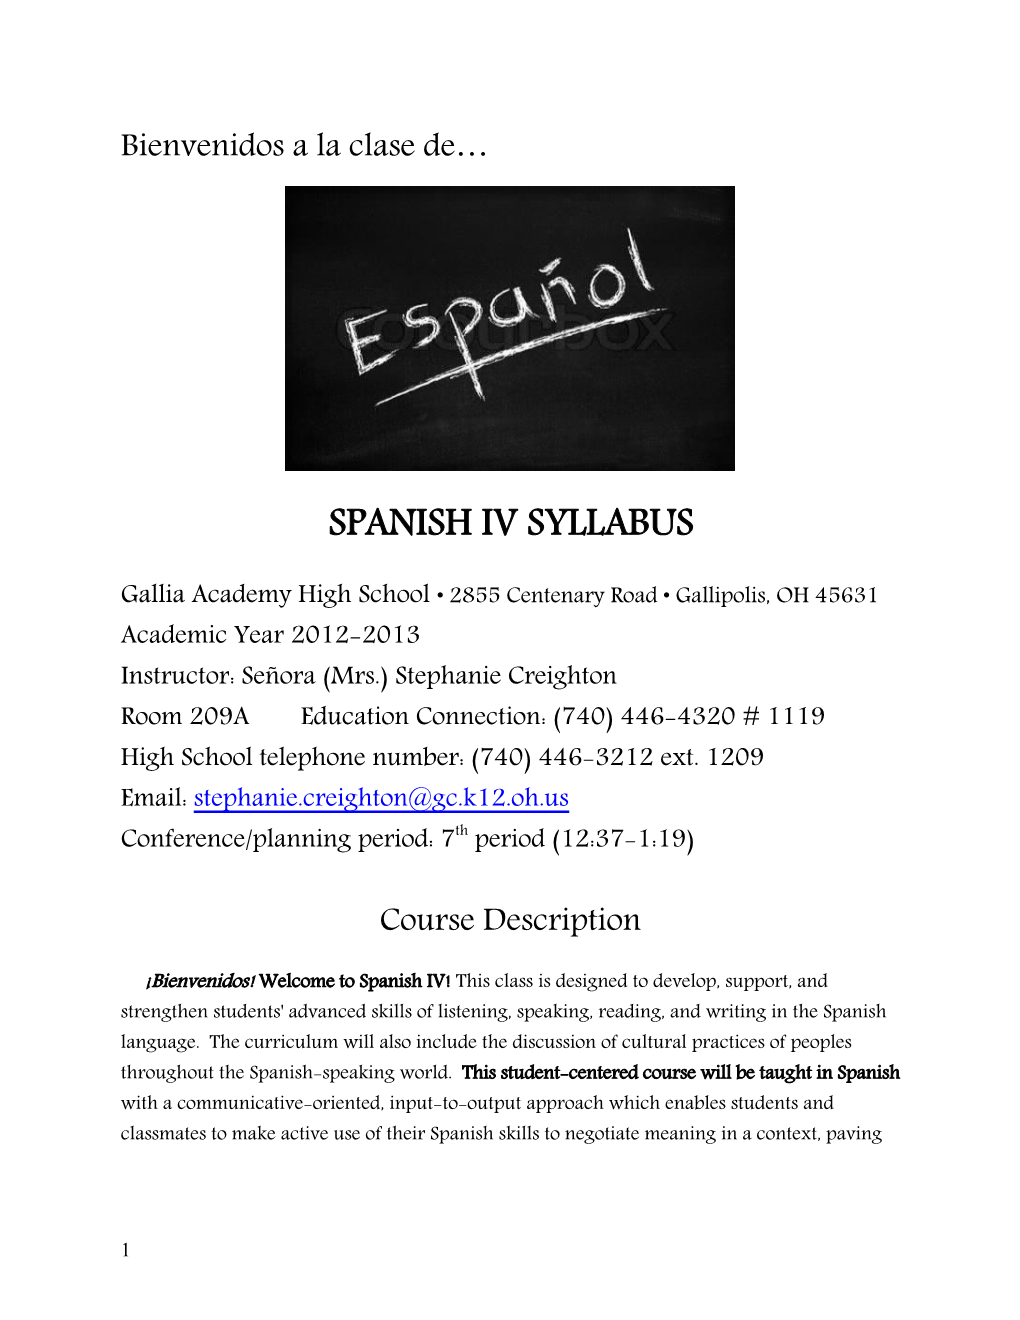 SPANISH IV Syllabus